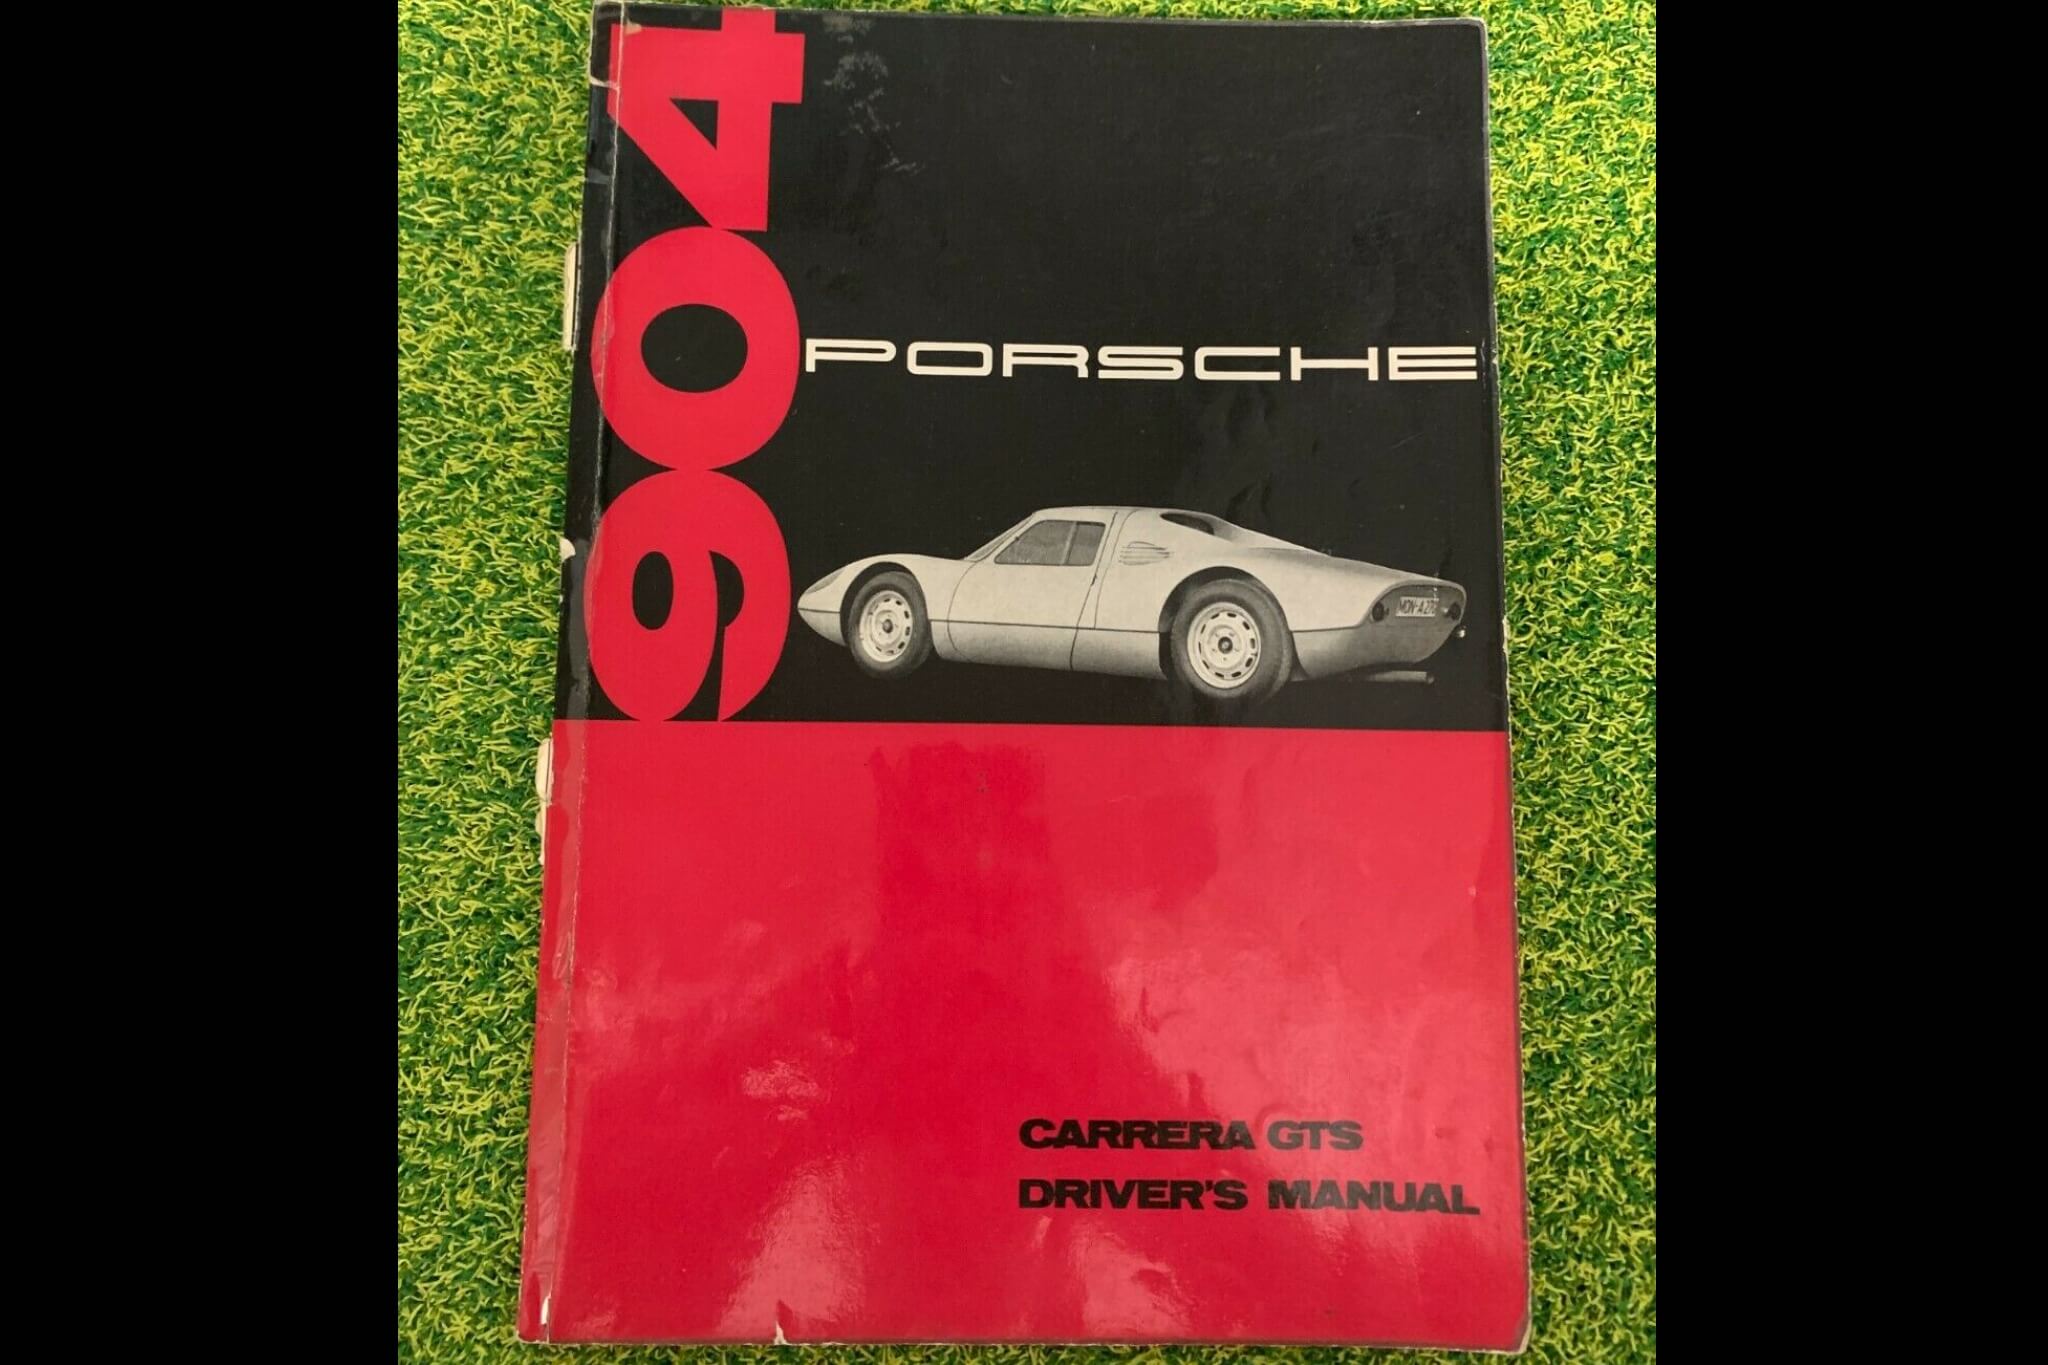 No Reserve Original Porsche 904 Carrera GTS Driver's Manual